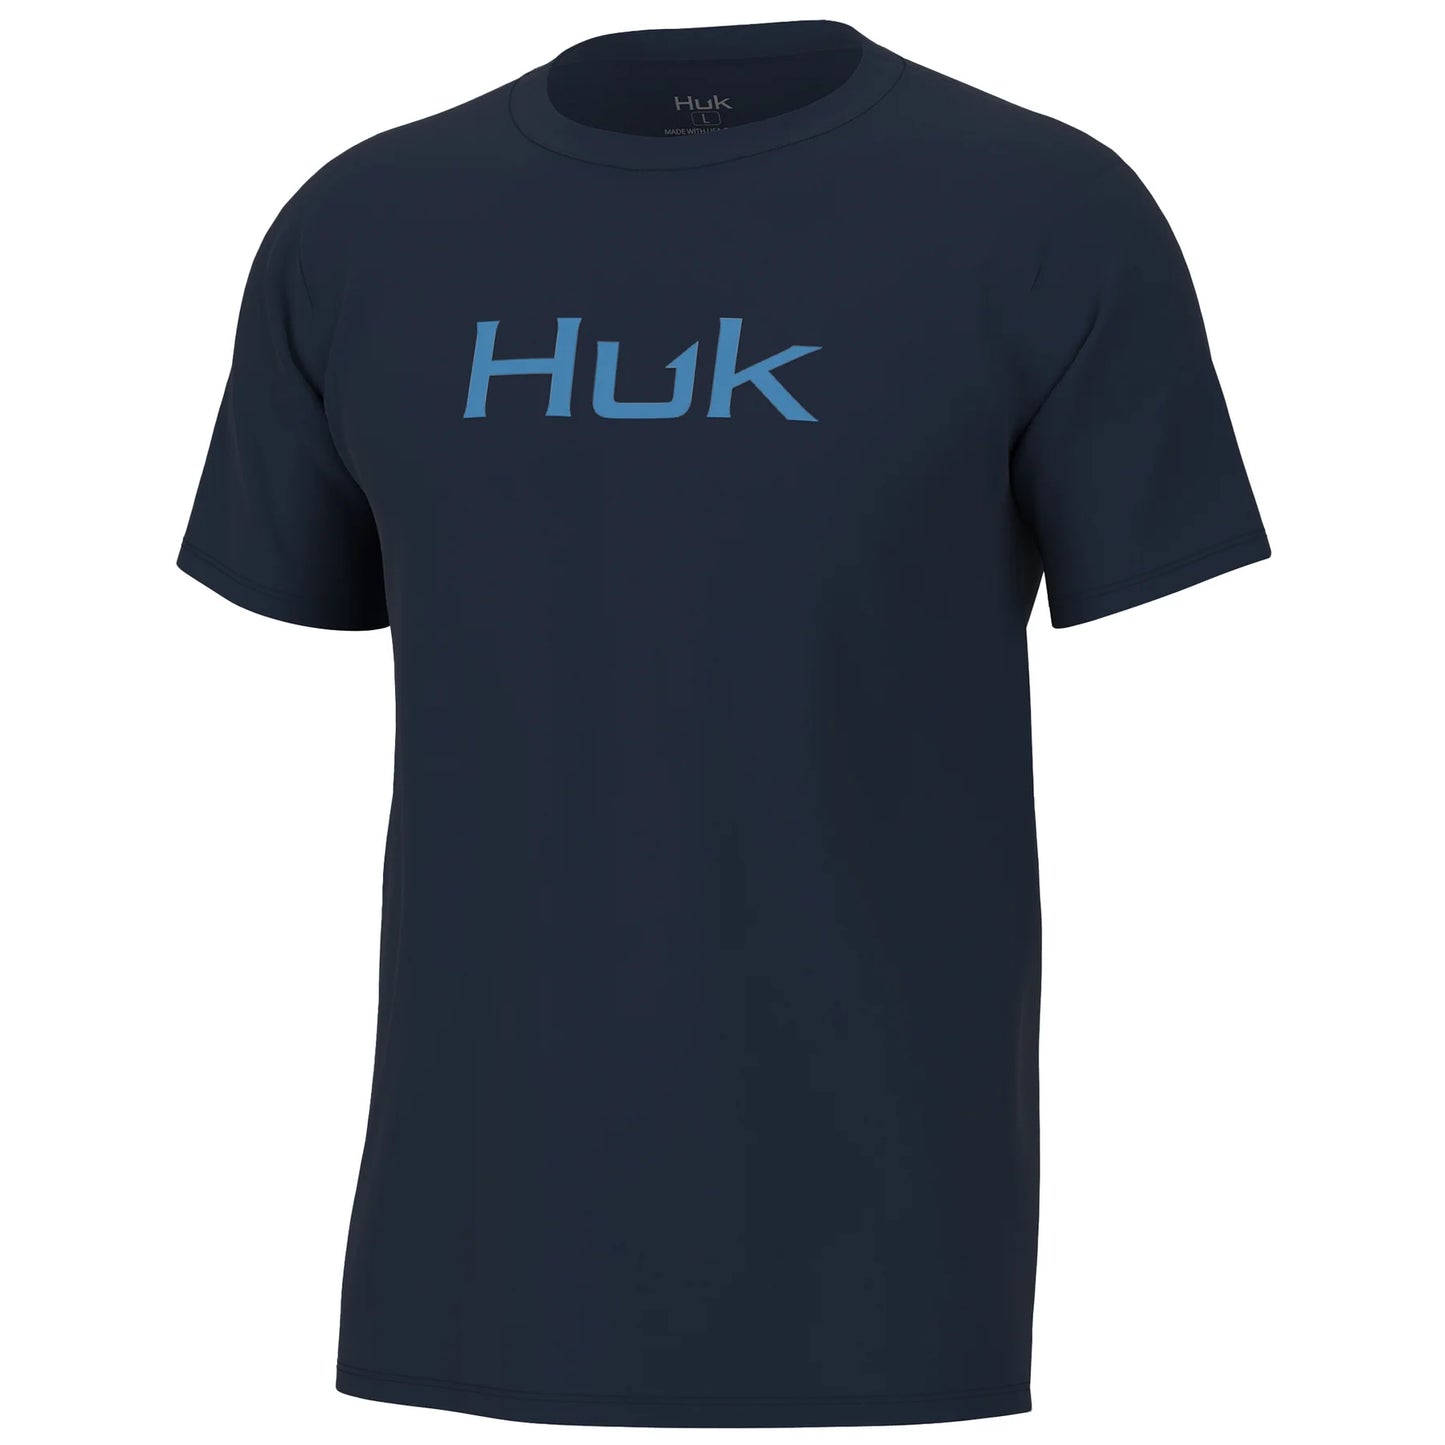 Huk Logo Tee - Set Sail